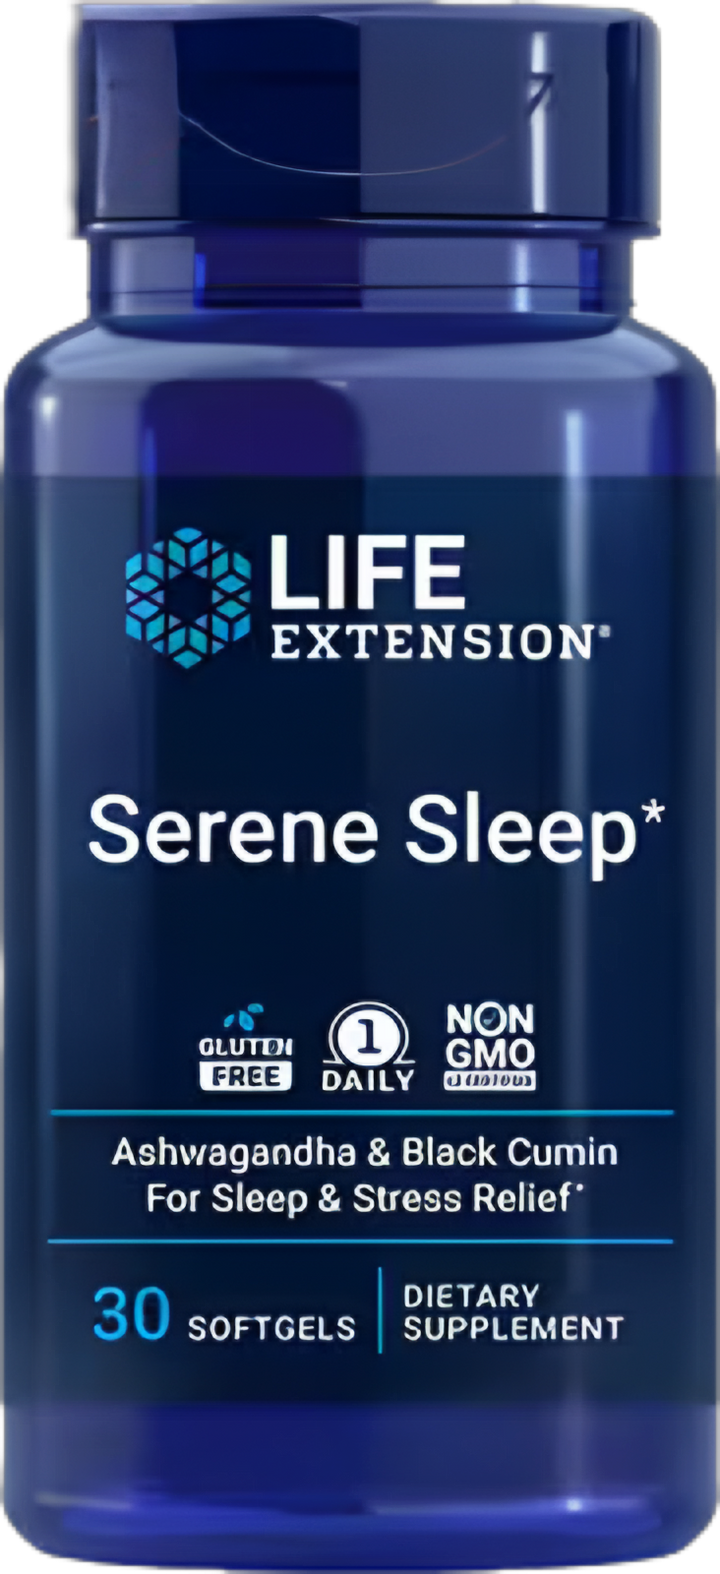 Serene Sleep - Life Extension